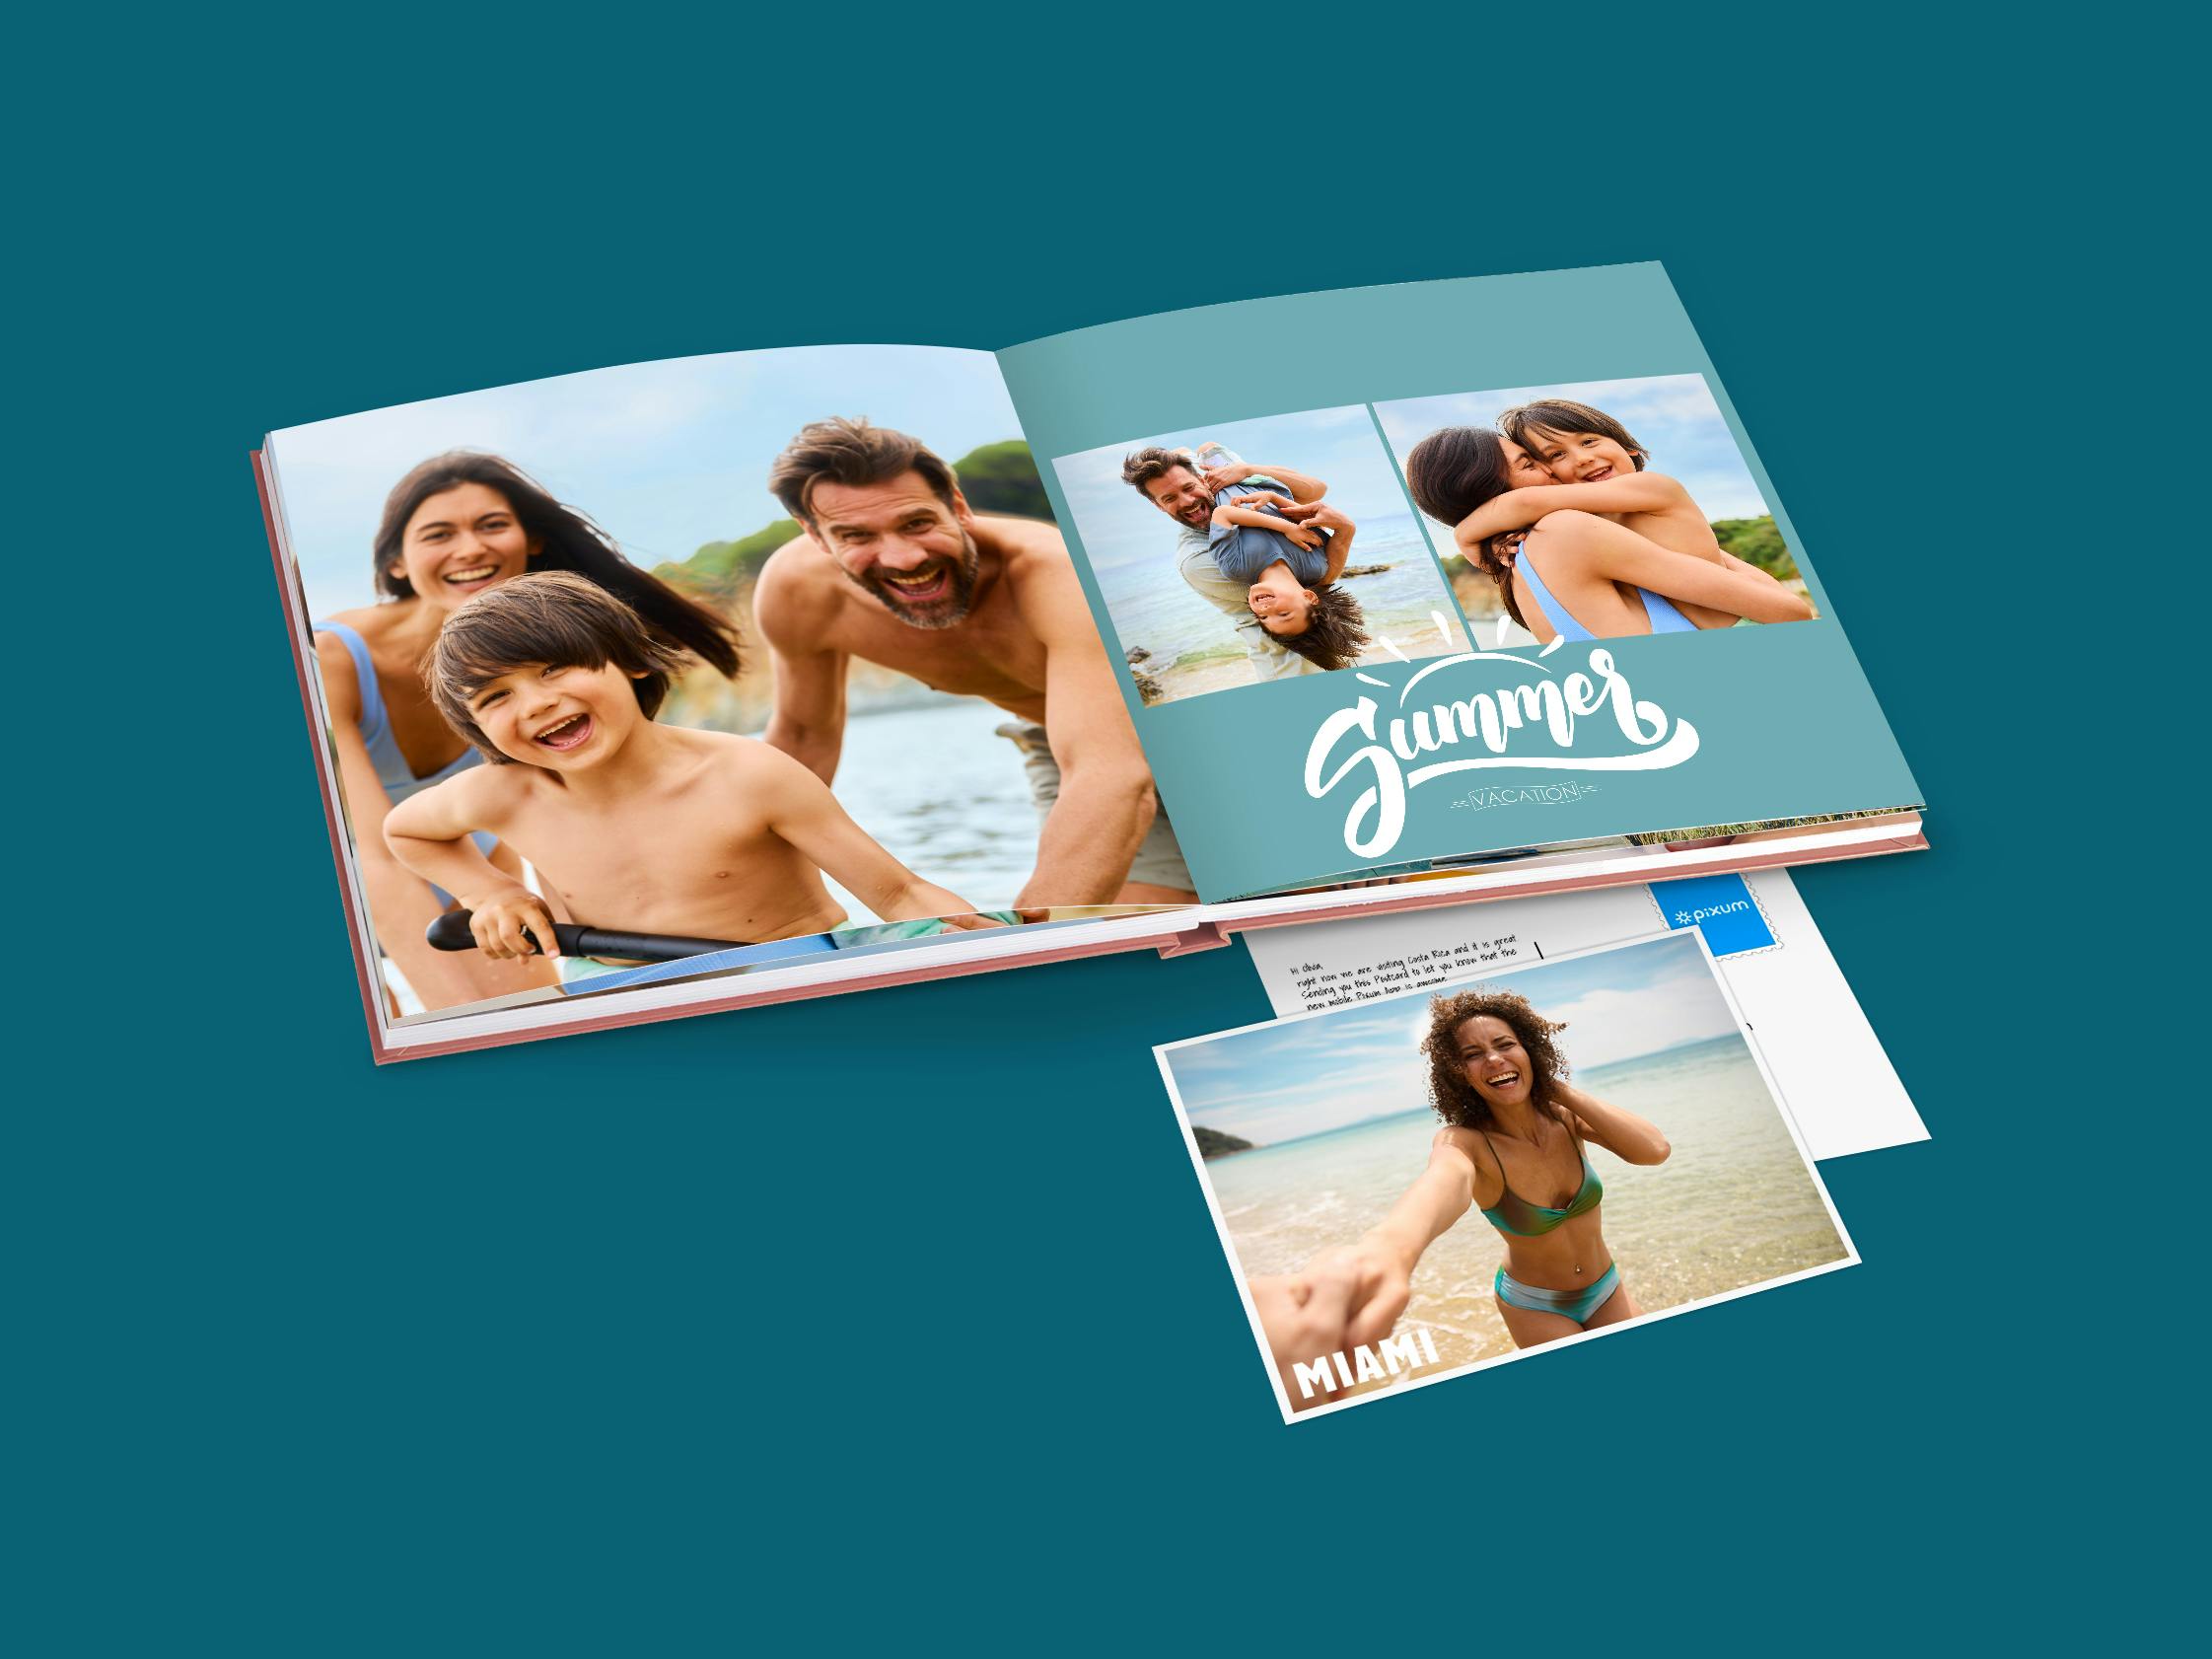 Pixum Fotobuch und Postkarte mit sommerlichen Urlaubsmotiven vor einem blauen Hintergrund